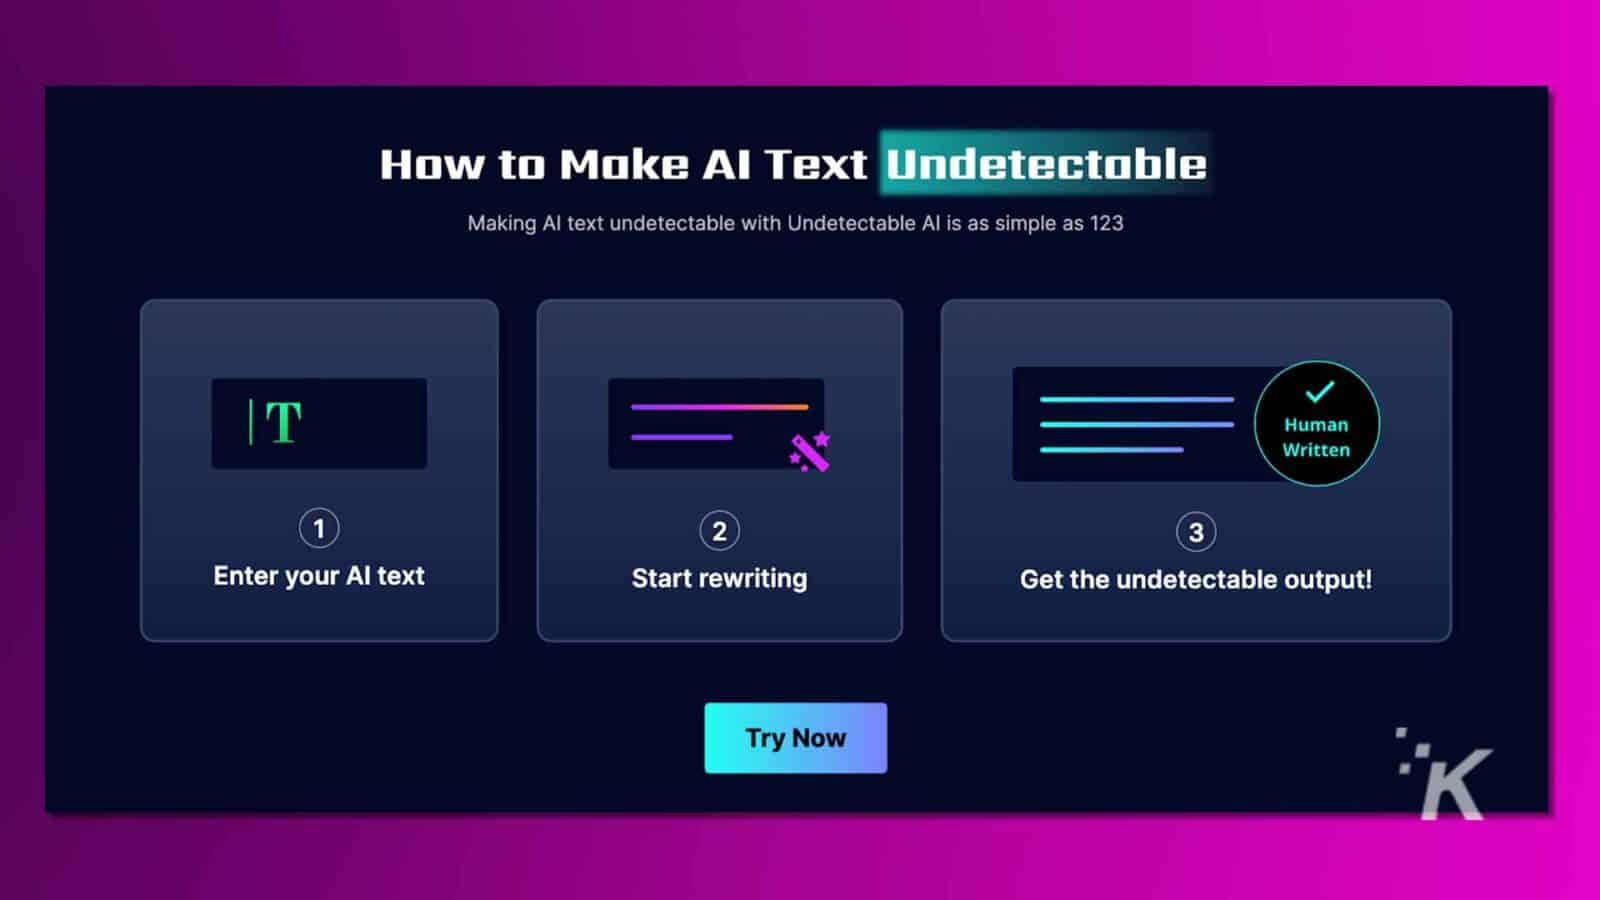 標題為「如何讓人工智慧文字無法偵測」的資訊圖，包含三個步驟、鮮豔的粉紅色和紫色以及「立即嘗試」按鈕，宣傳軟體工具。無法偵測到的人工智慧